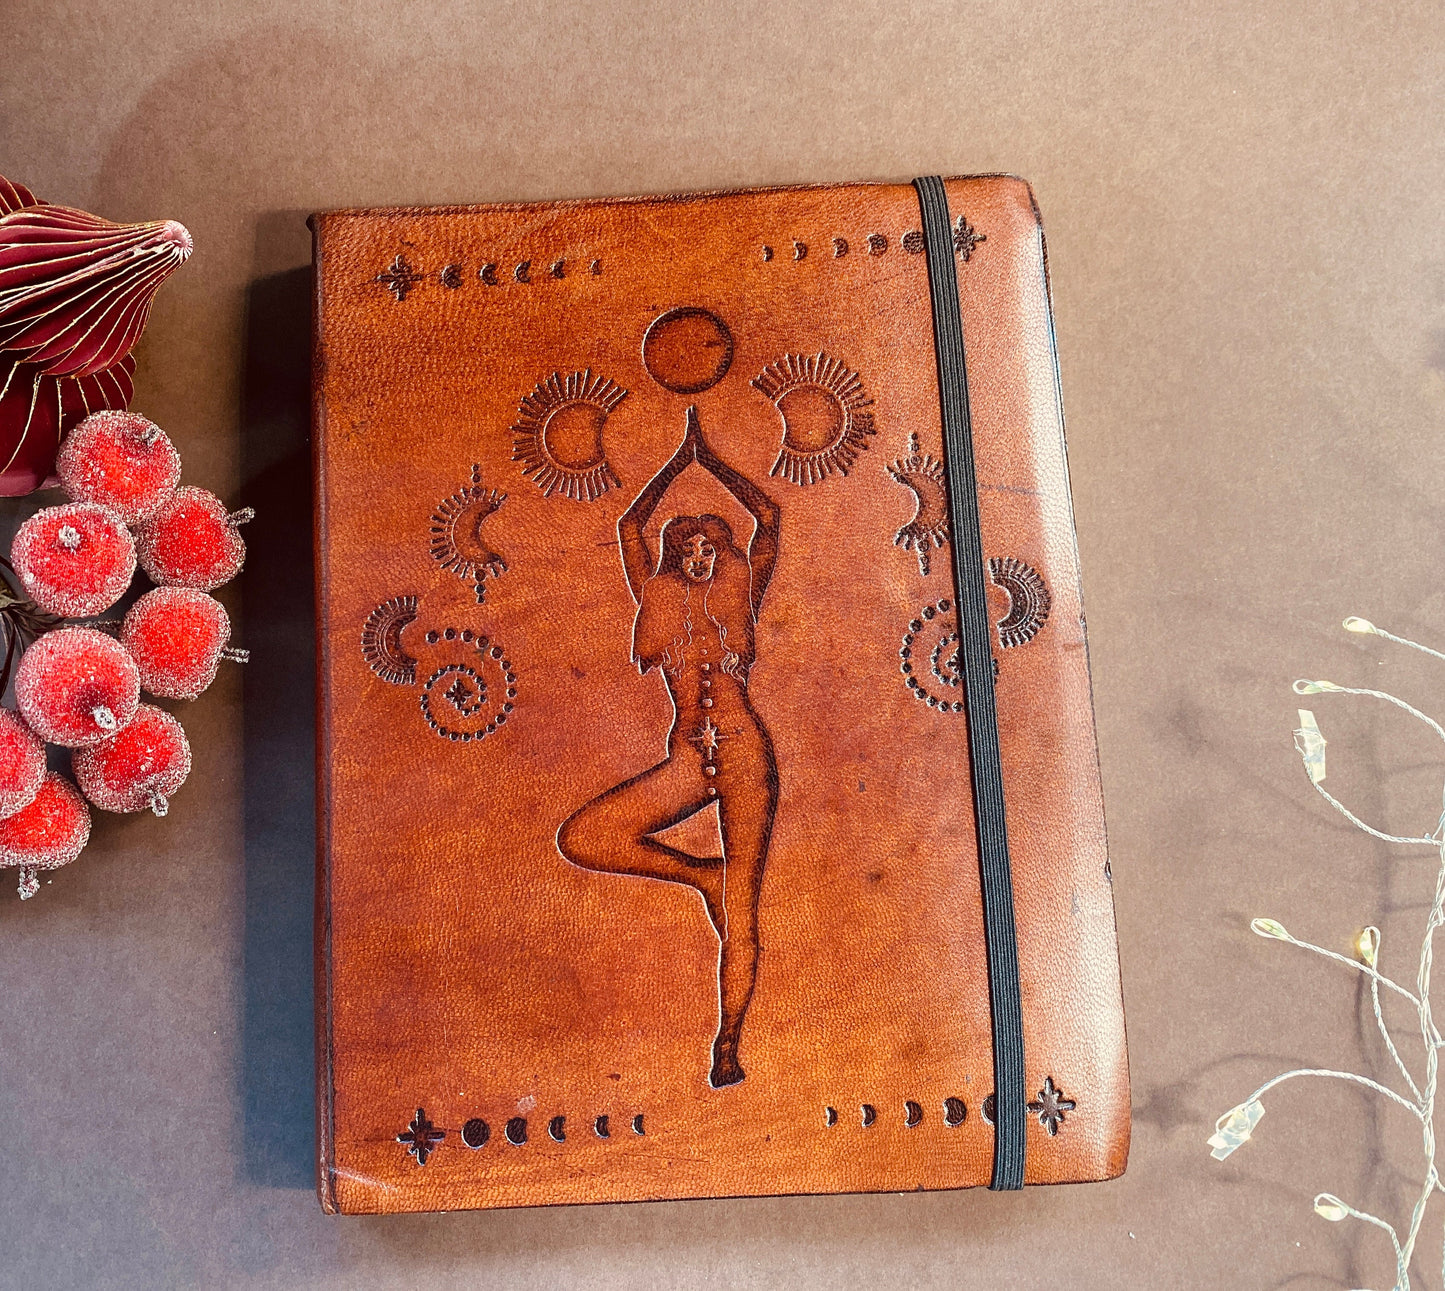 Leather, vegetable tanned, handmade, cosmic goddess journal.